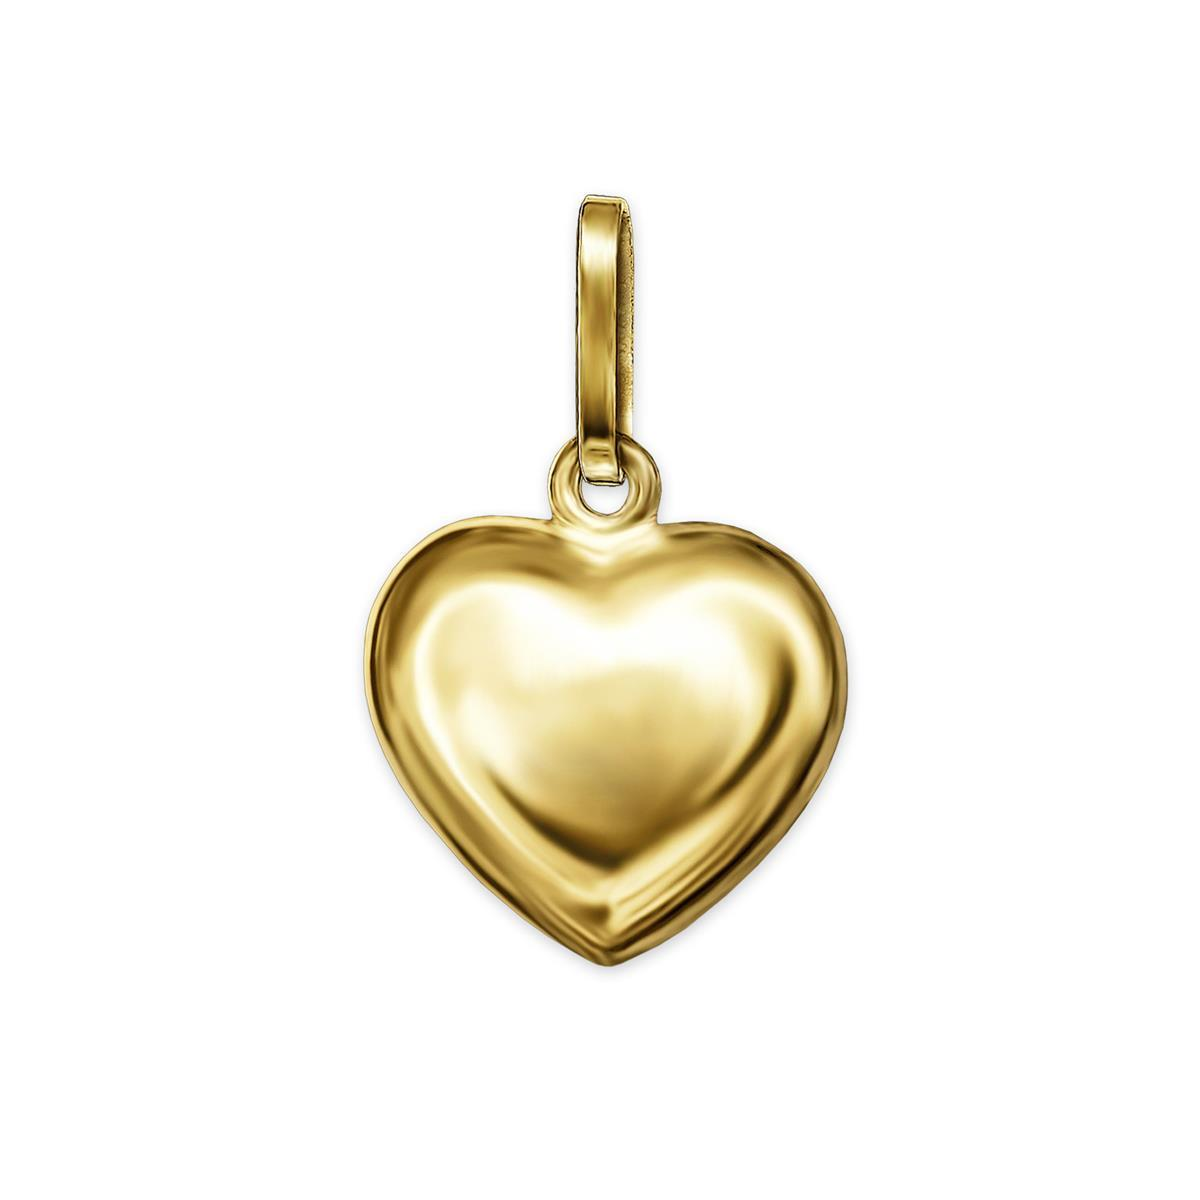 Goldener Anhänger kleines Herz 8 mm glänzend plastisch, beidseitig gewölbt geschlossen 333 GOLD 8 KARAT